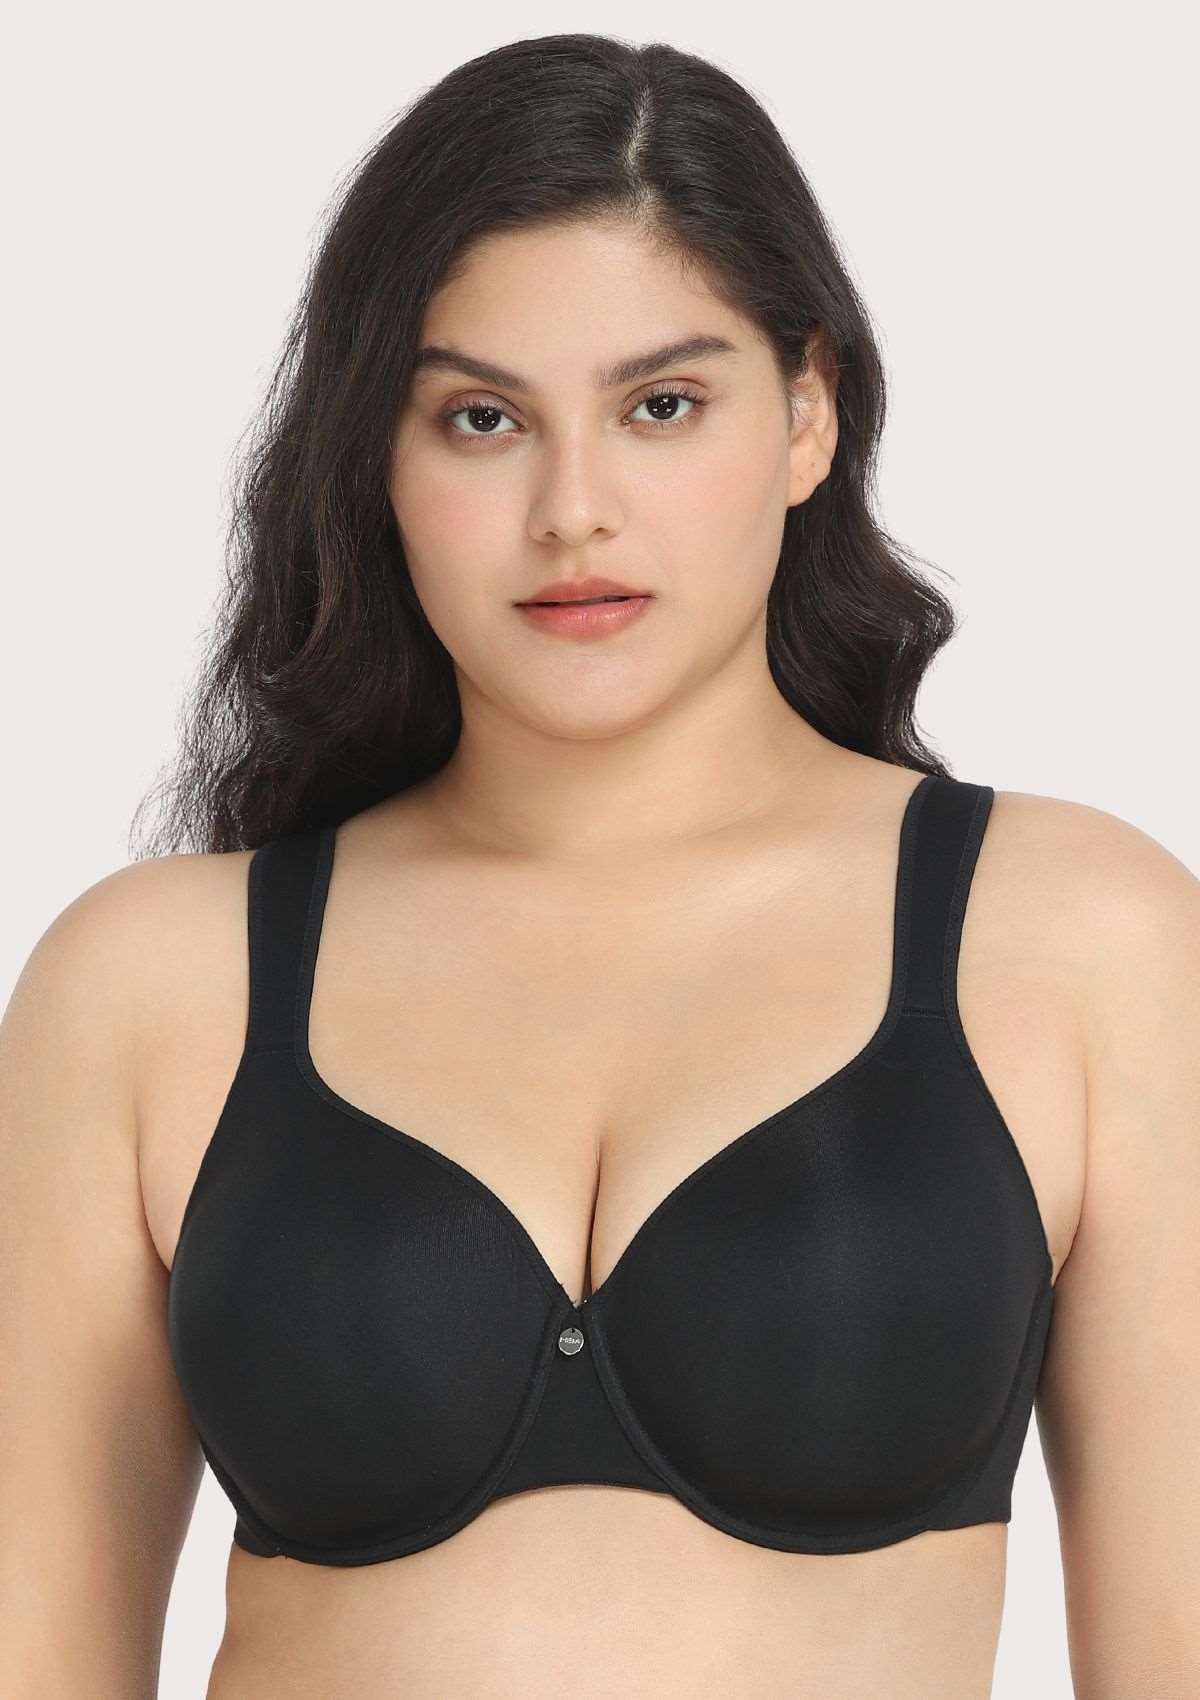 Minimiser bra in black Expert In Silhouette